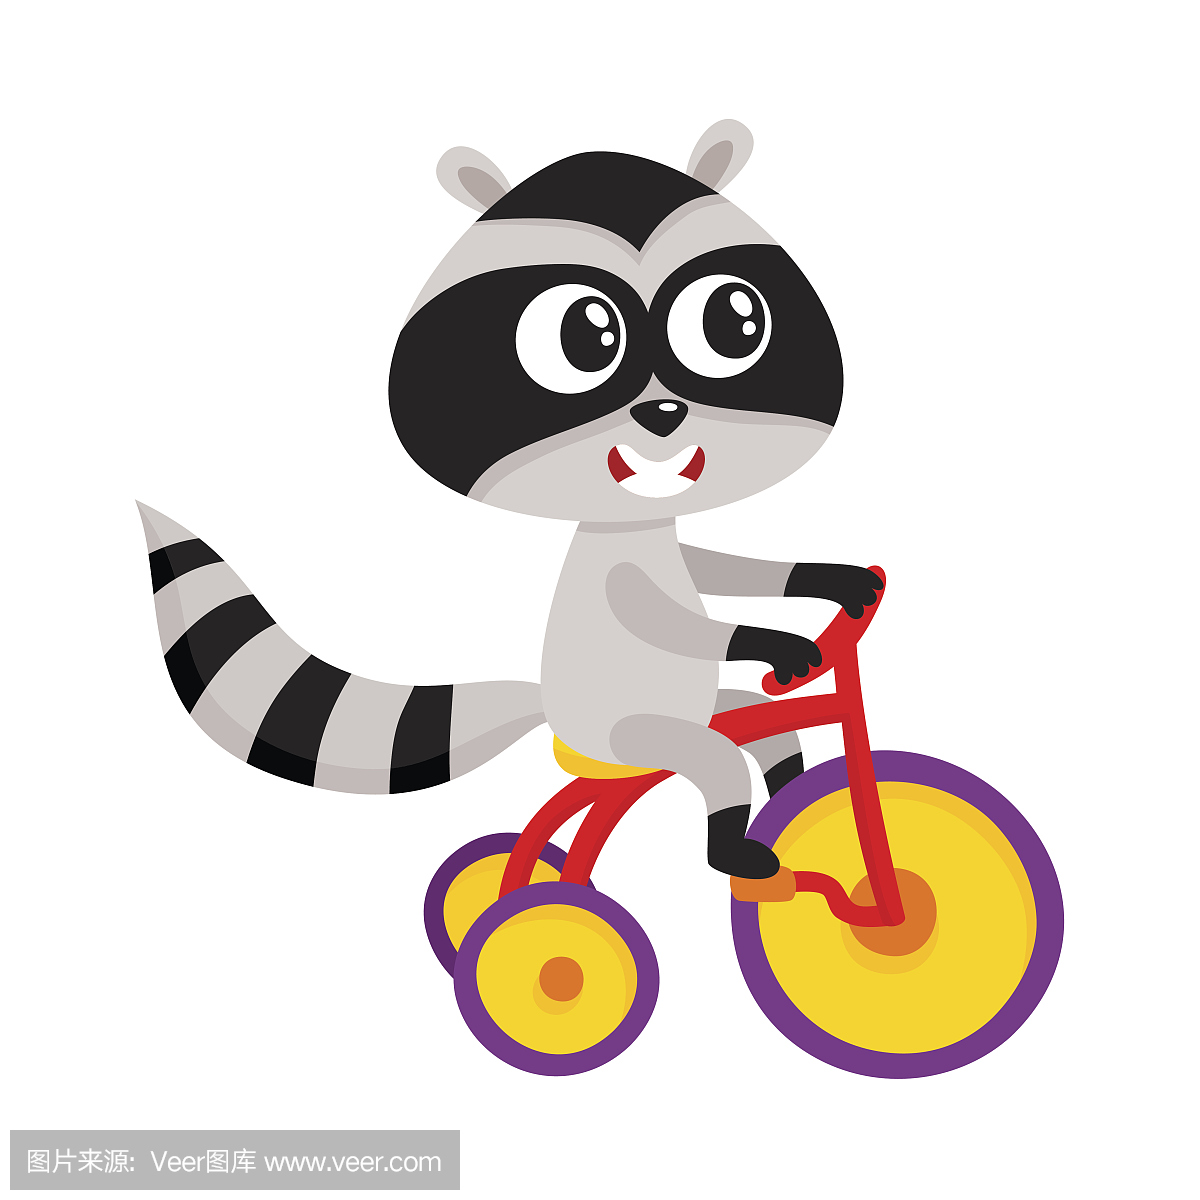 可爱的小浣熊角色骑自行车,三轮车,骑自行车,卡